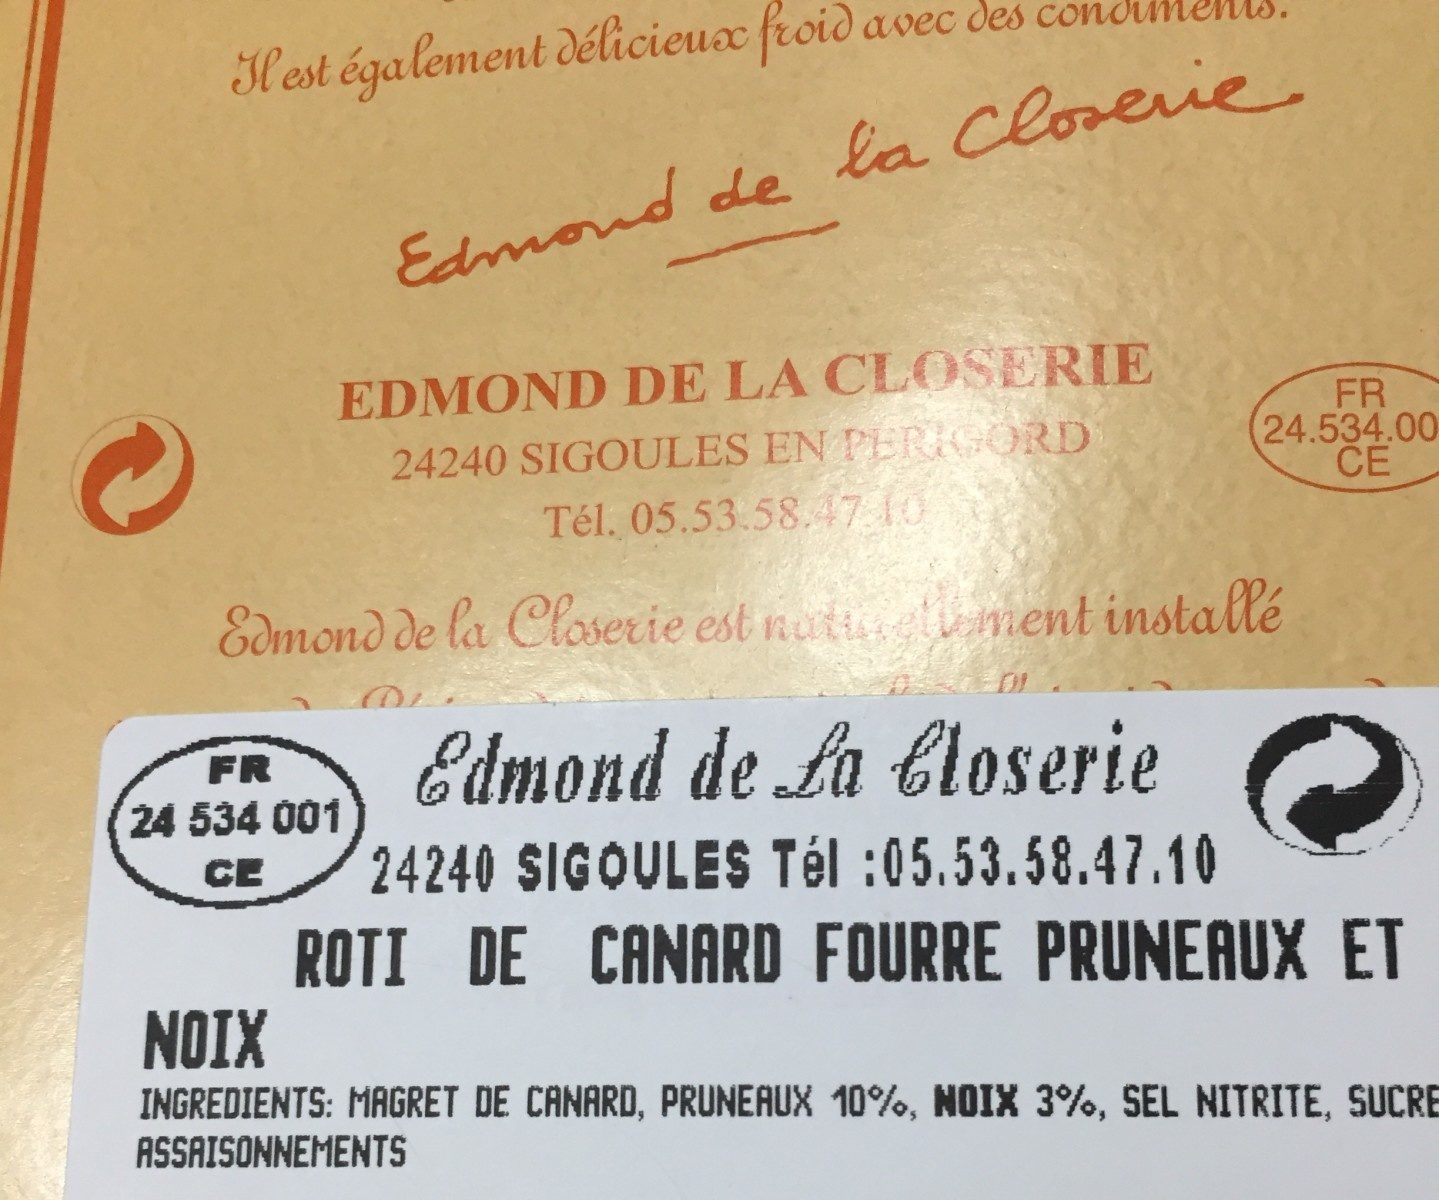 Rôti de canard fourré aux pruneaux et noix - Ingredients - fr